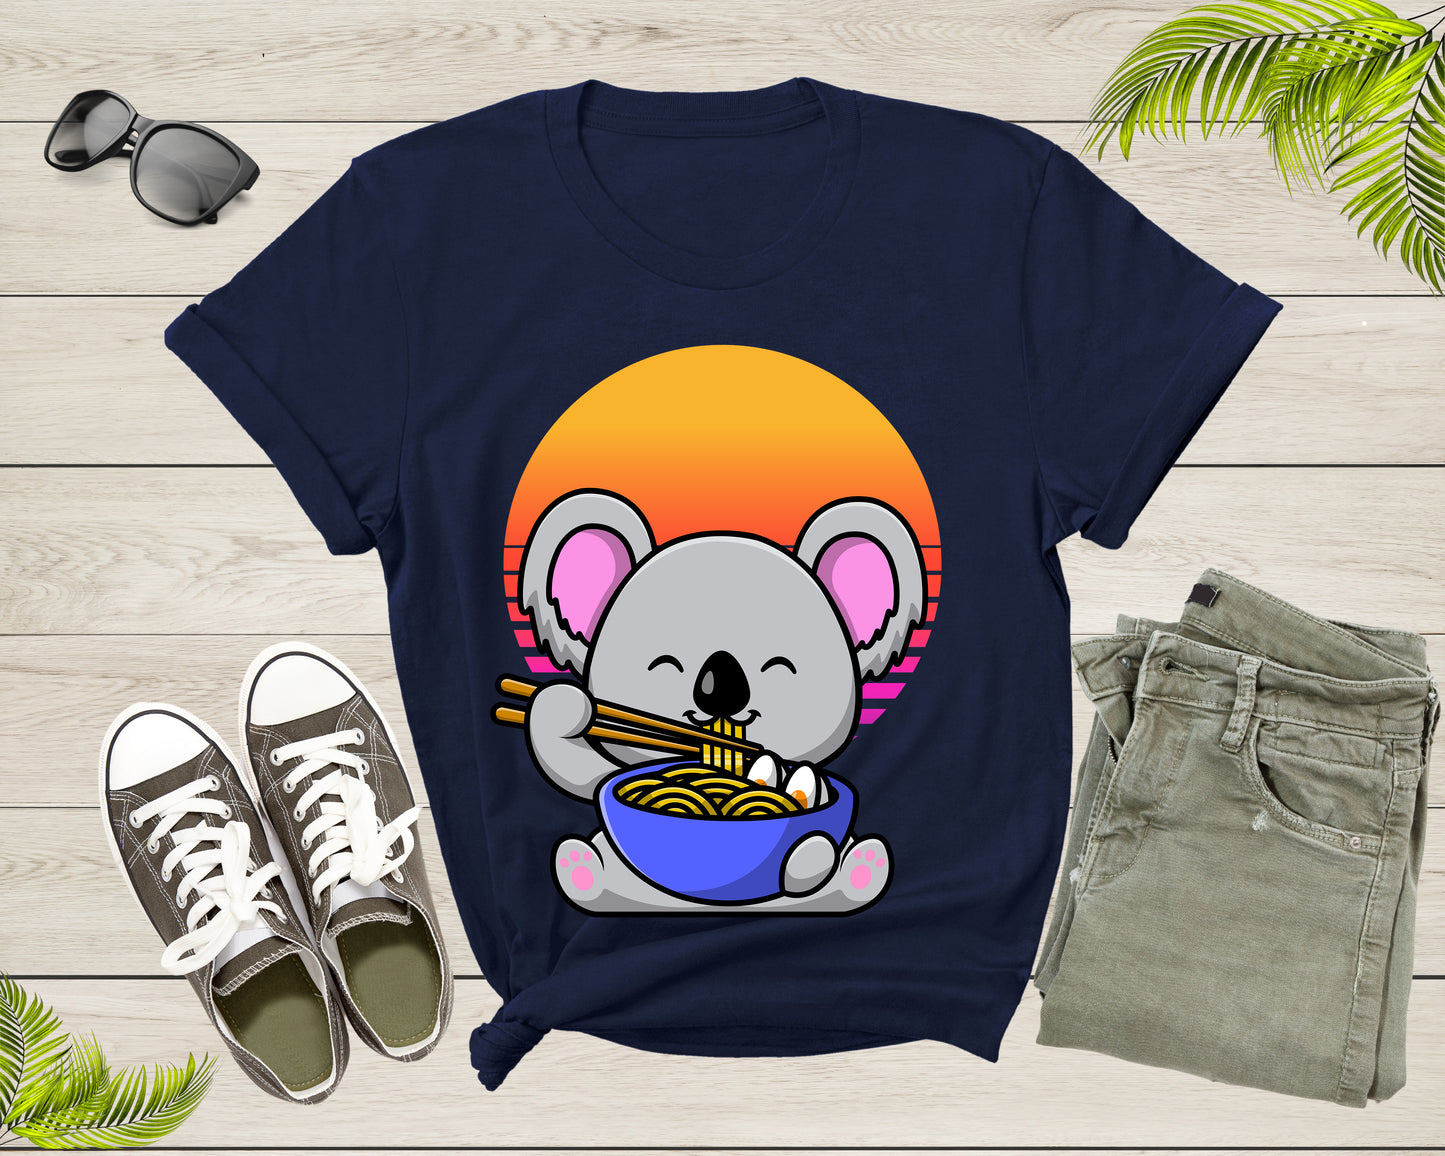 Cute Koala Mascot Eating Japanese Ramen Noodle Retro Sunset T-Shirt Koala Lover Gift T Shirt for Men Women Kids Boys Girls Graphic Tshirt